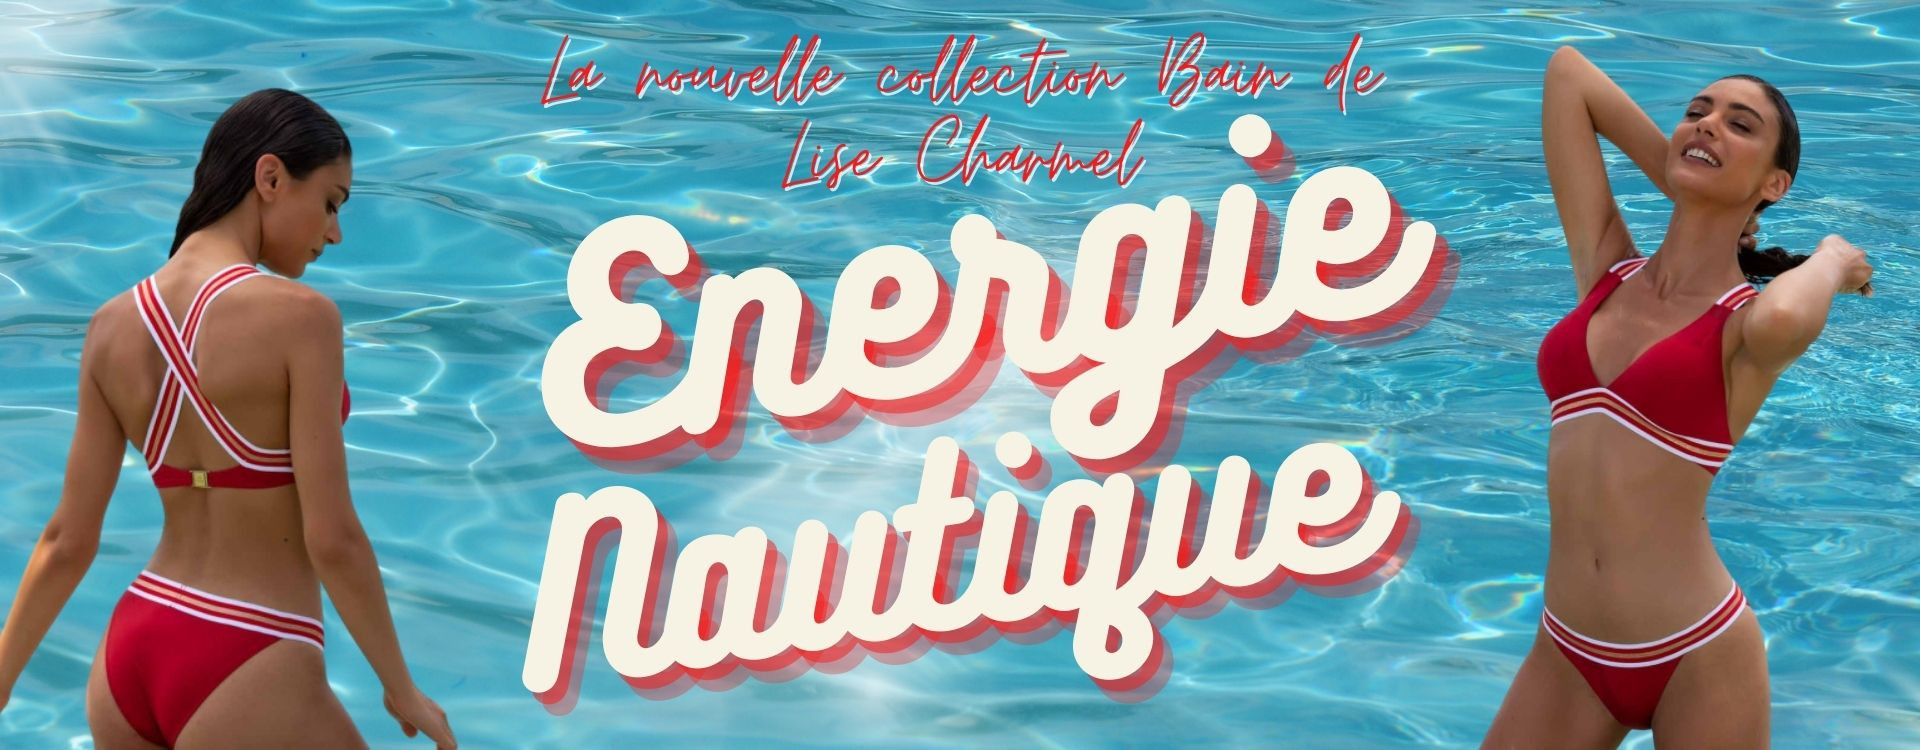 La nouvelle collection Bain de Lise Charmel : Énergie Nautique